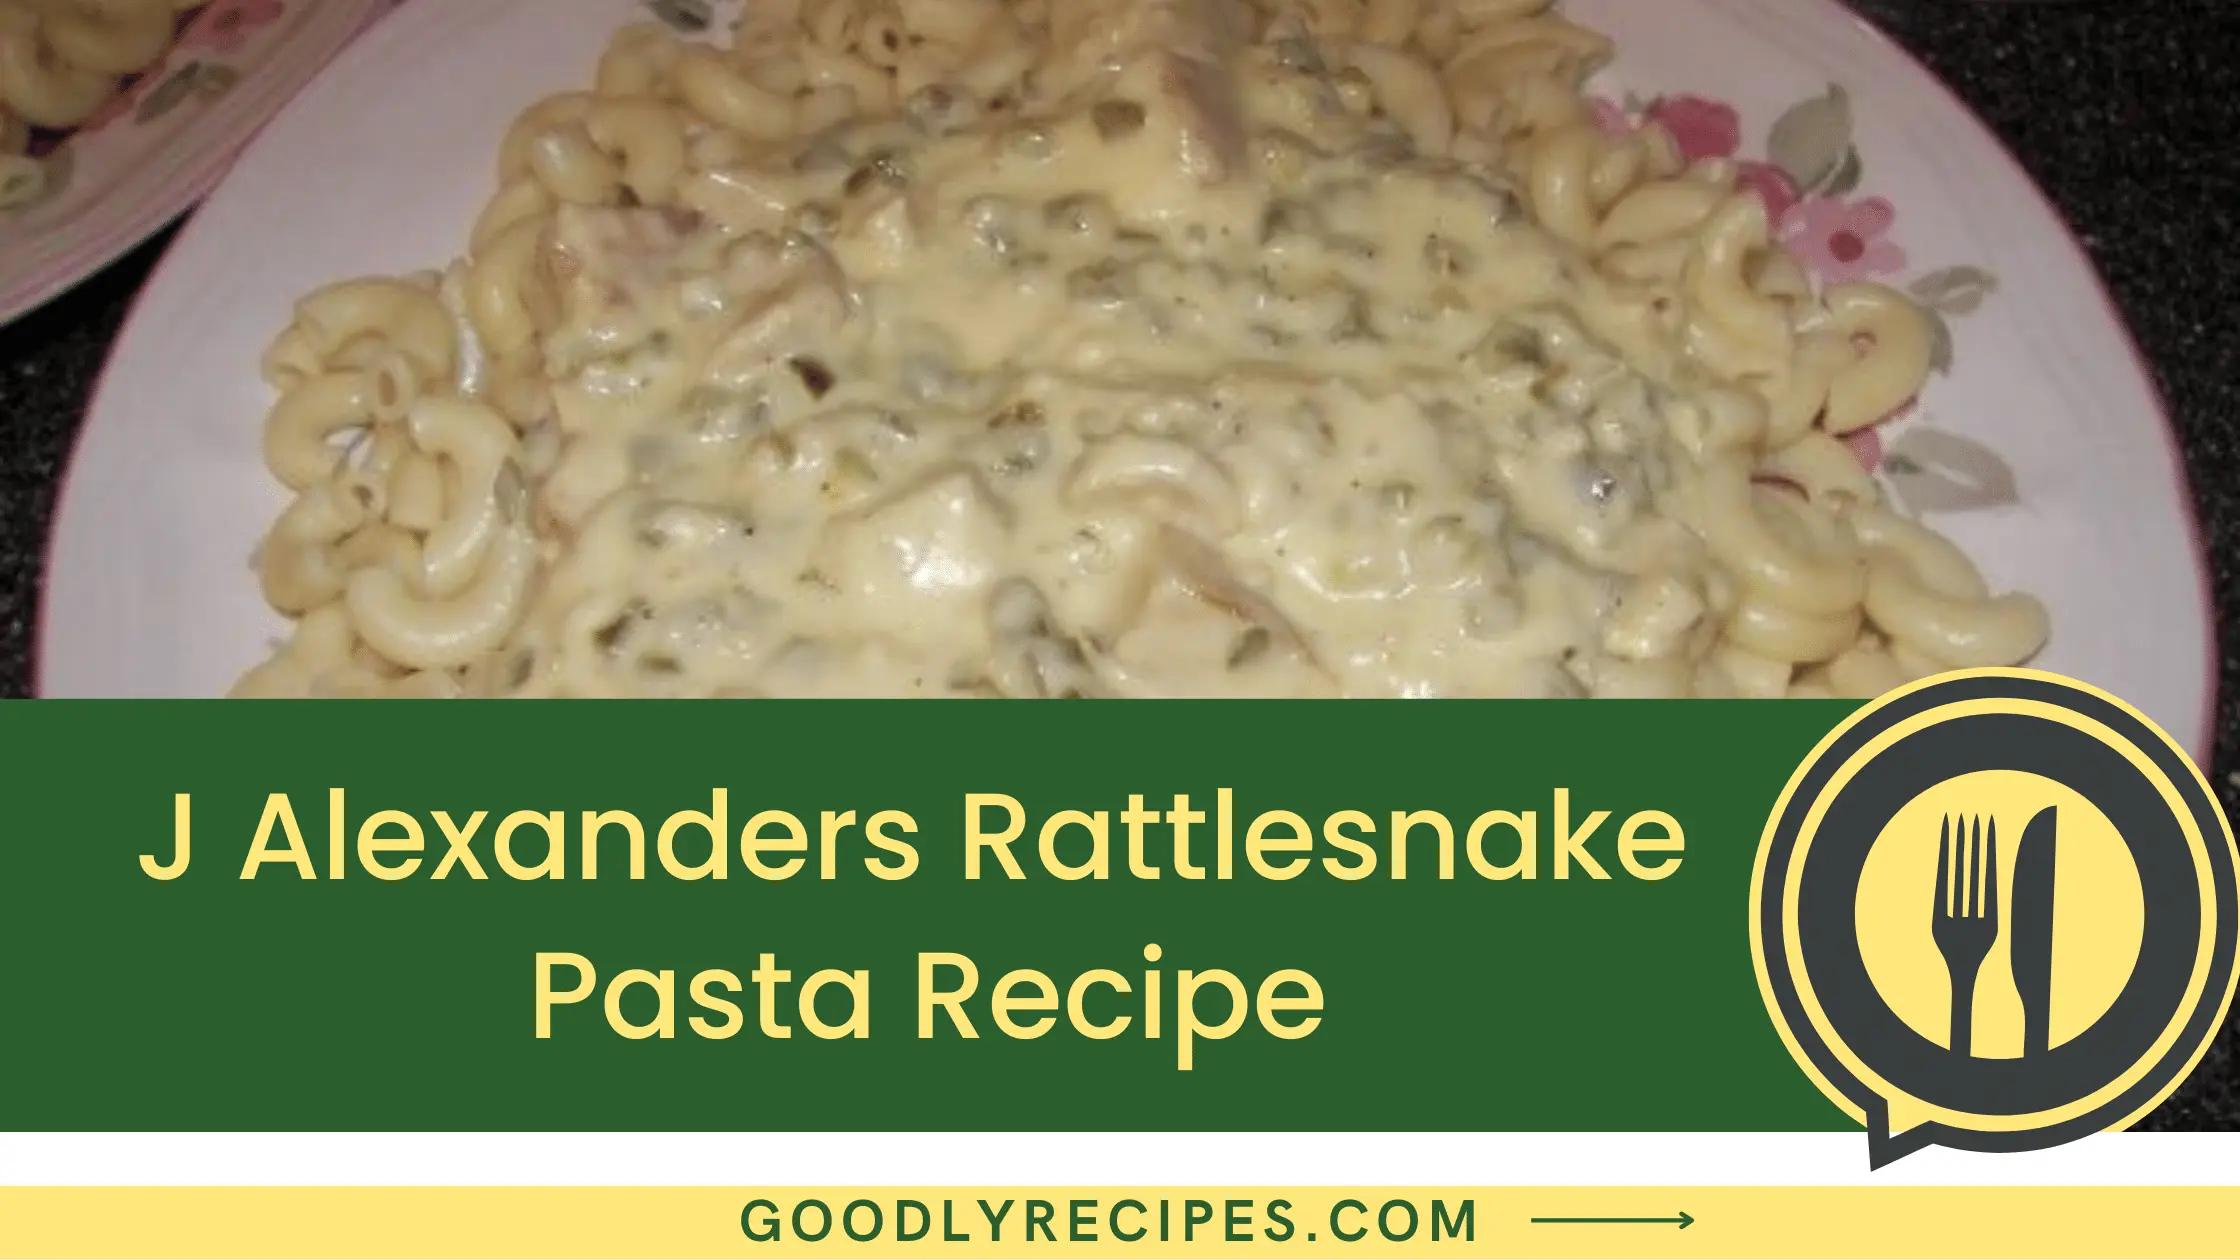 J Alexander’s Rattlesnake Pasta Recipe - For Food Lovers